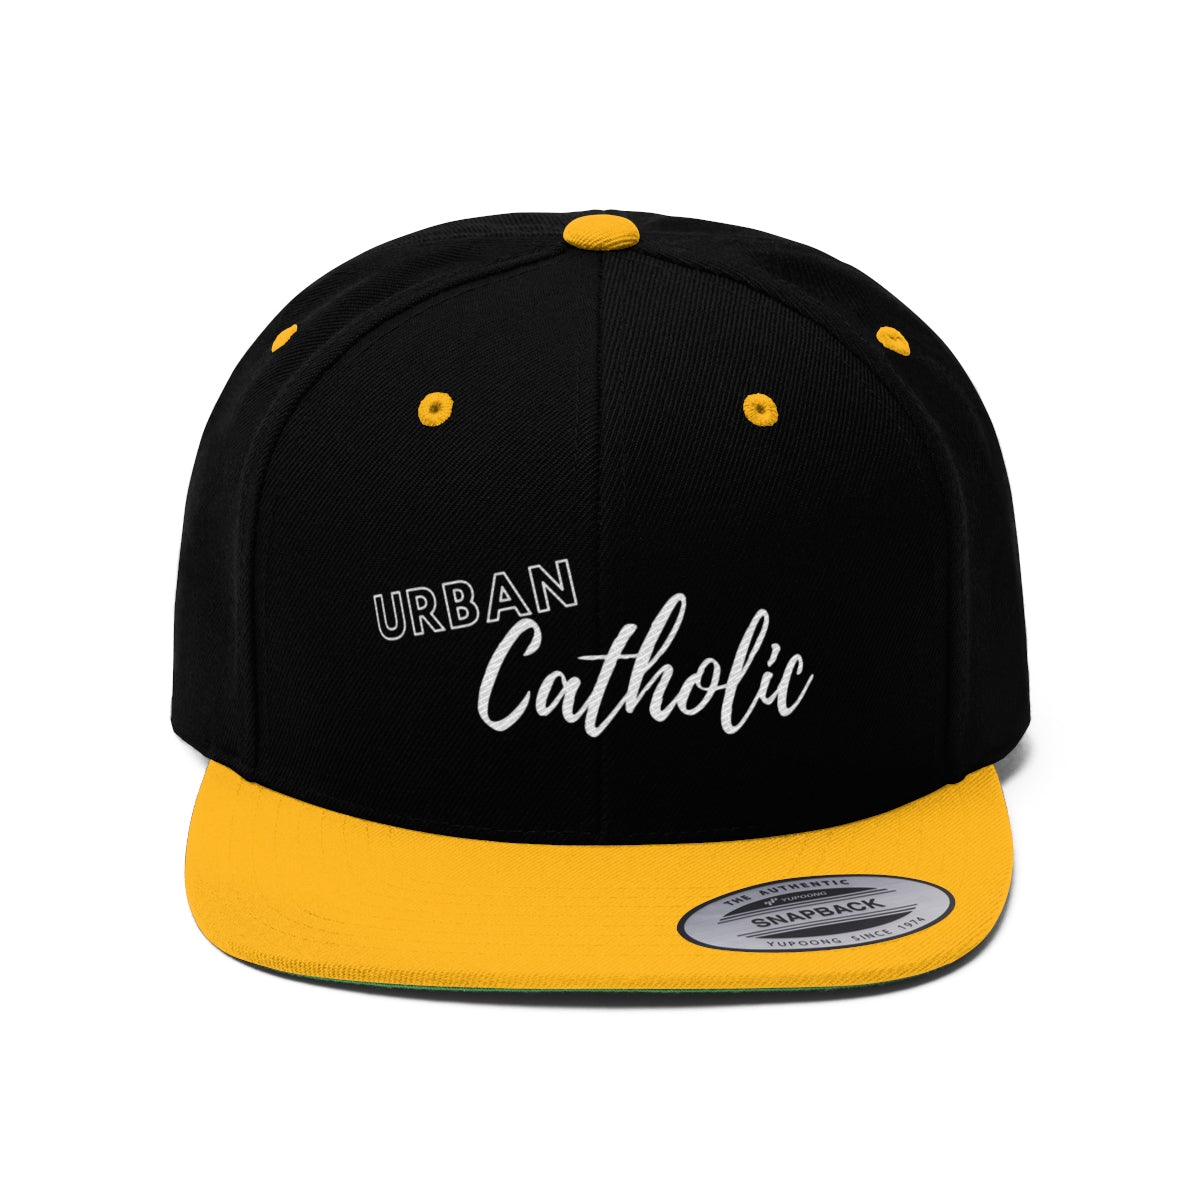 Urban Catholic Snapback Hat